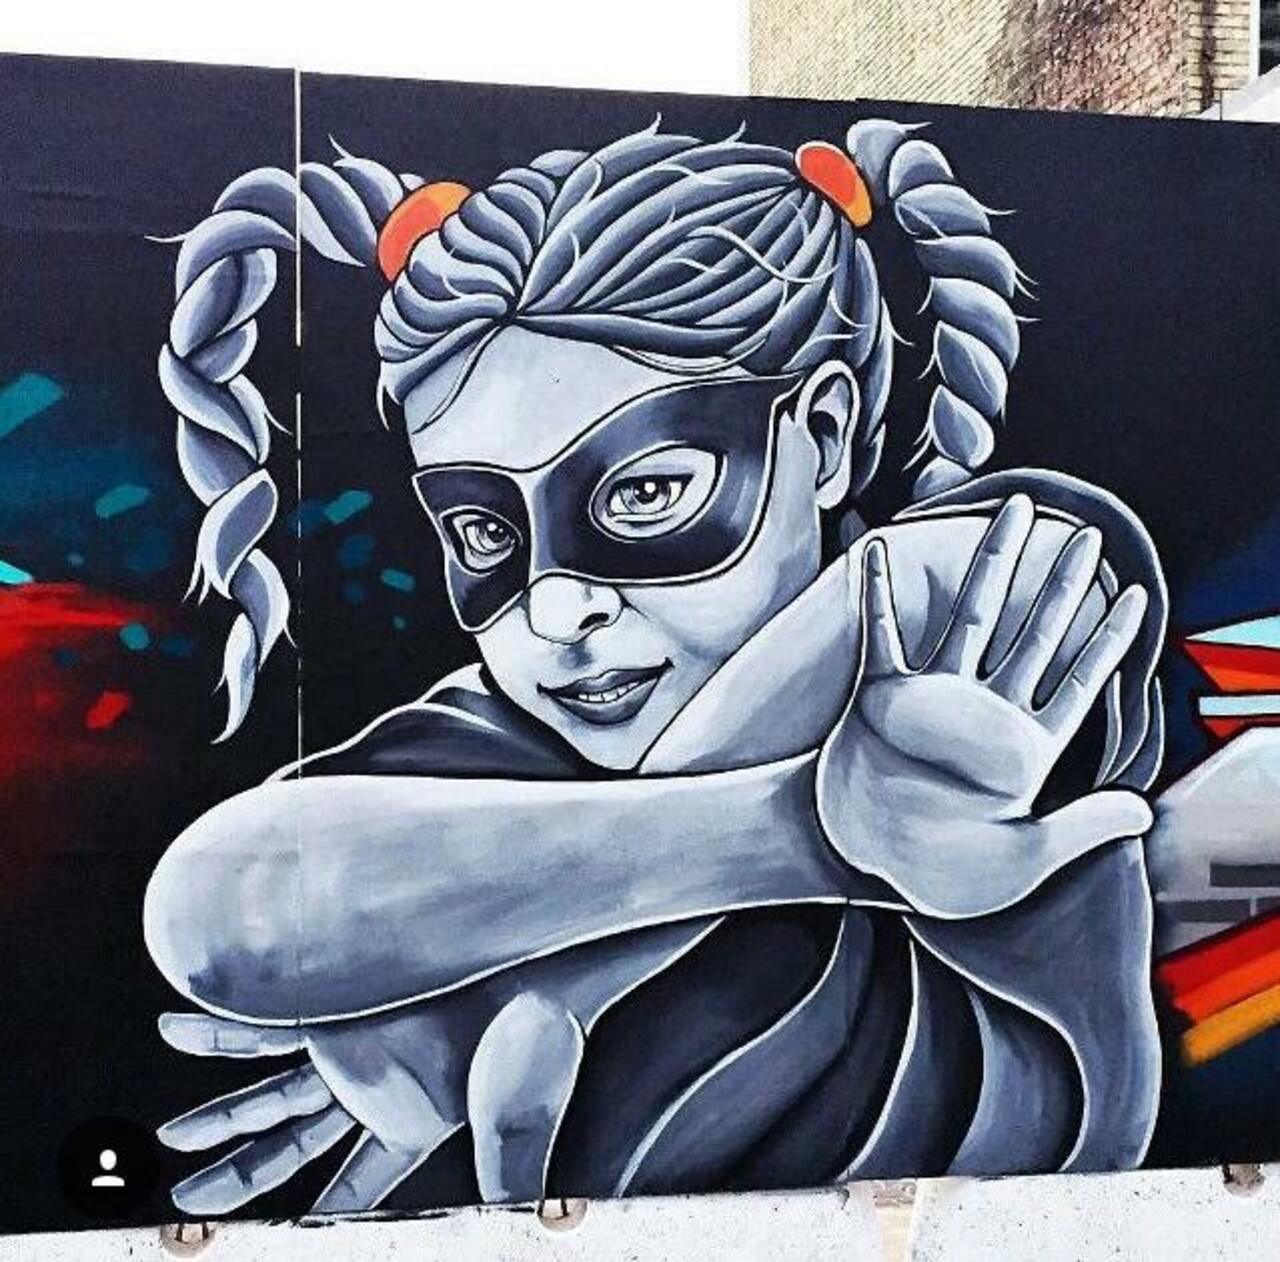 Street Art by Stinehvid 

#art #graffiti #mural #streetart http://t.co/d6ZKsma5Z9 https://goo.gl/7kifqw